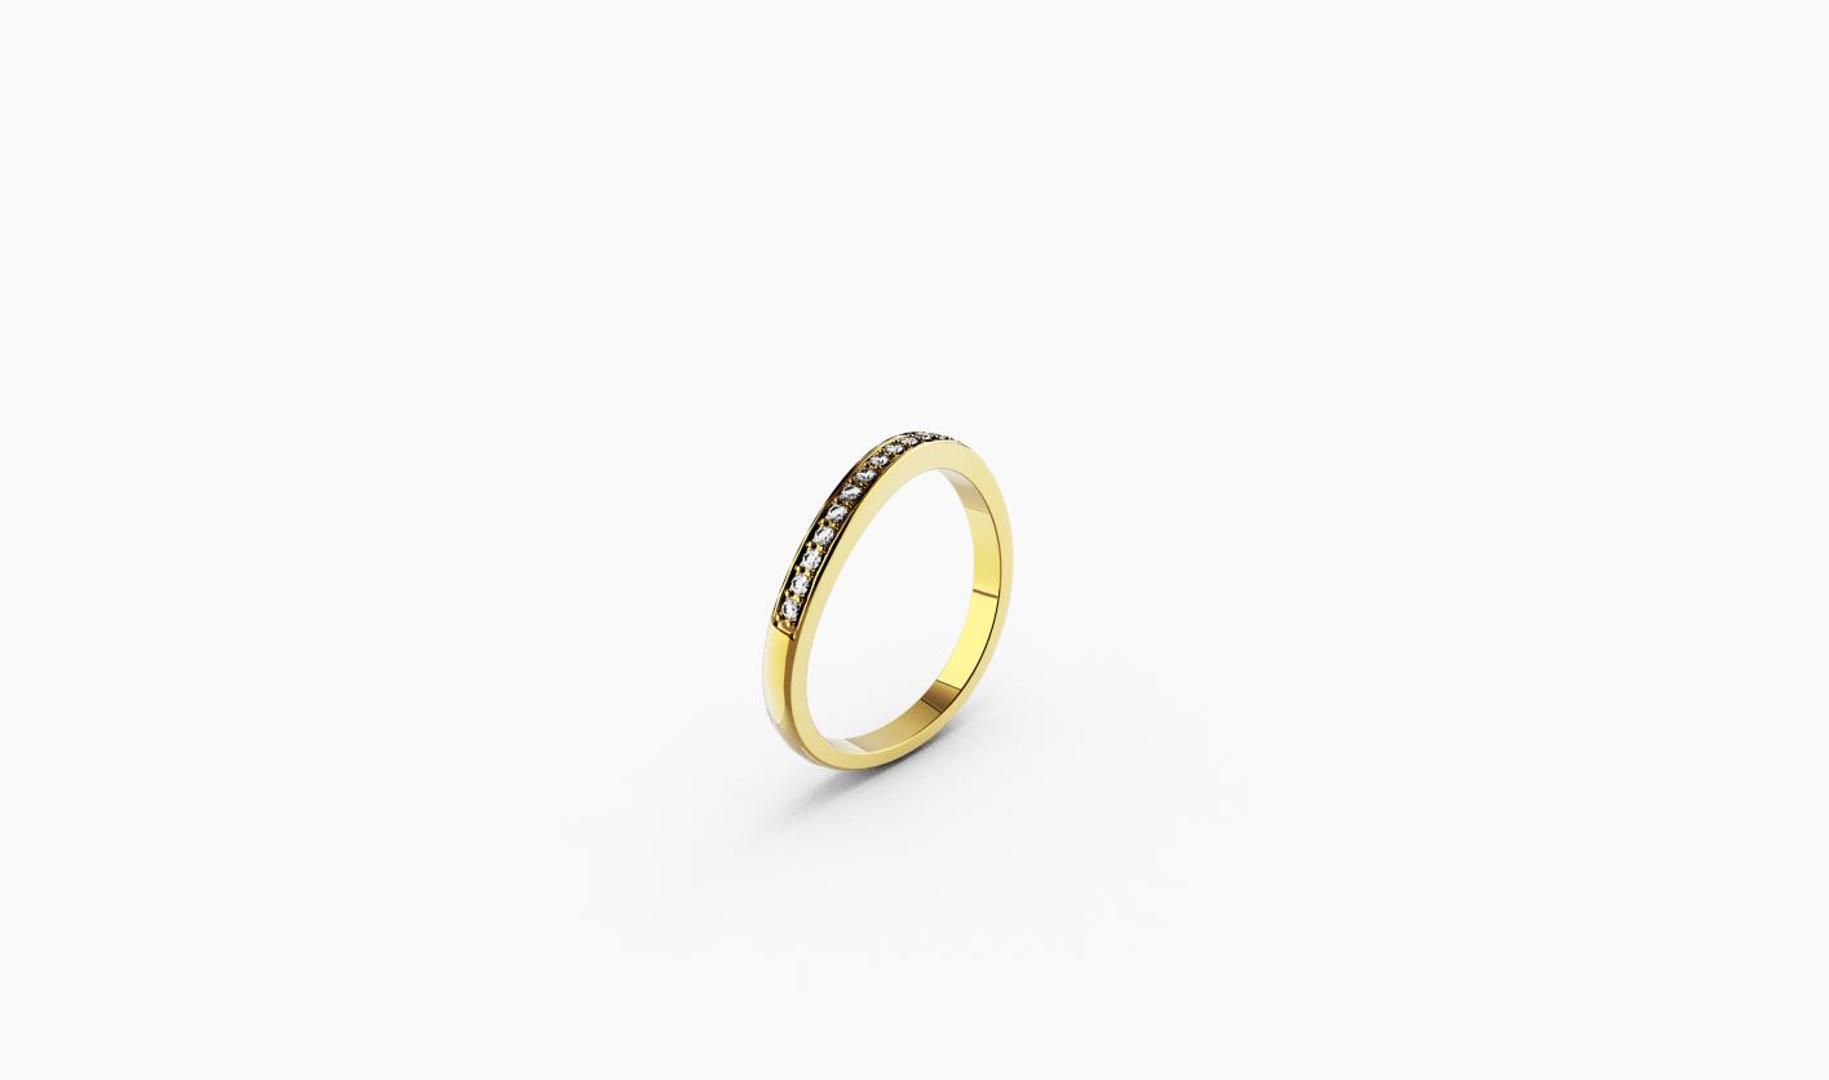 Zlatni prsten, red.cijena 1440kn, sada 936kn - ZAKS